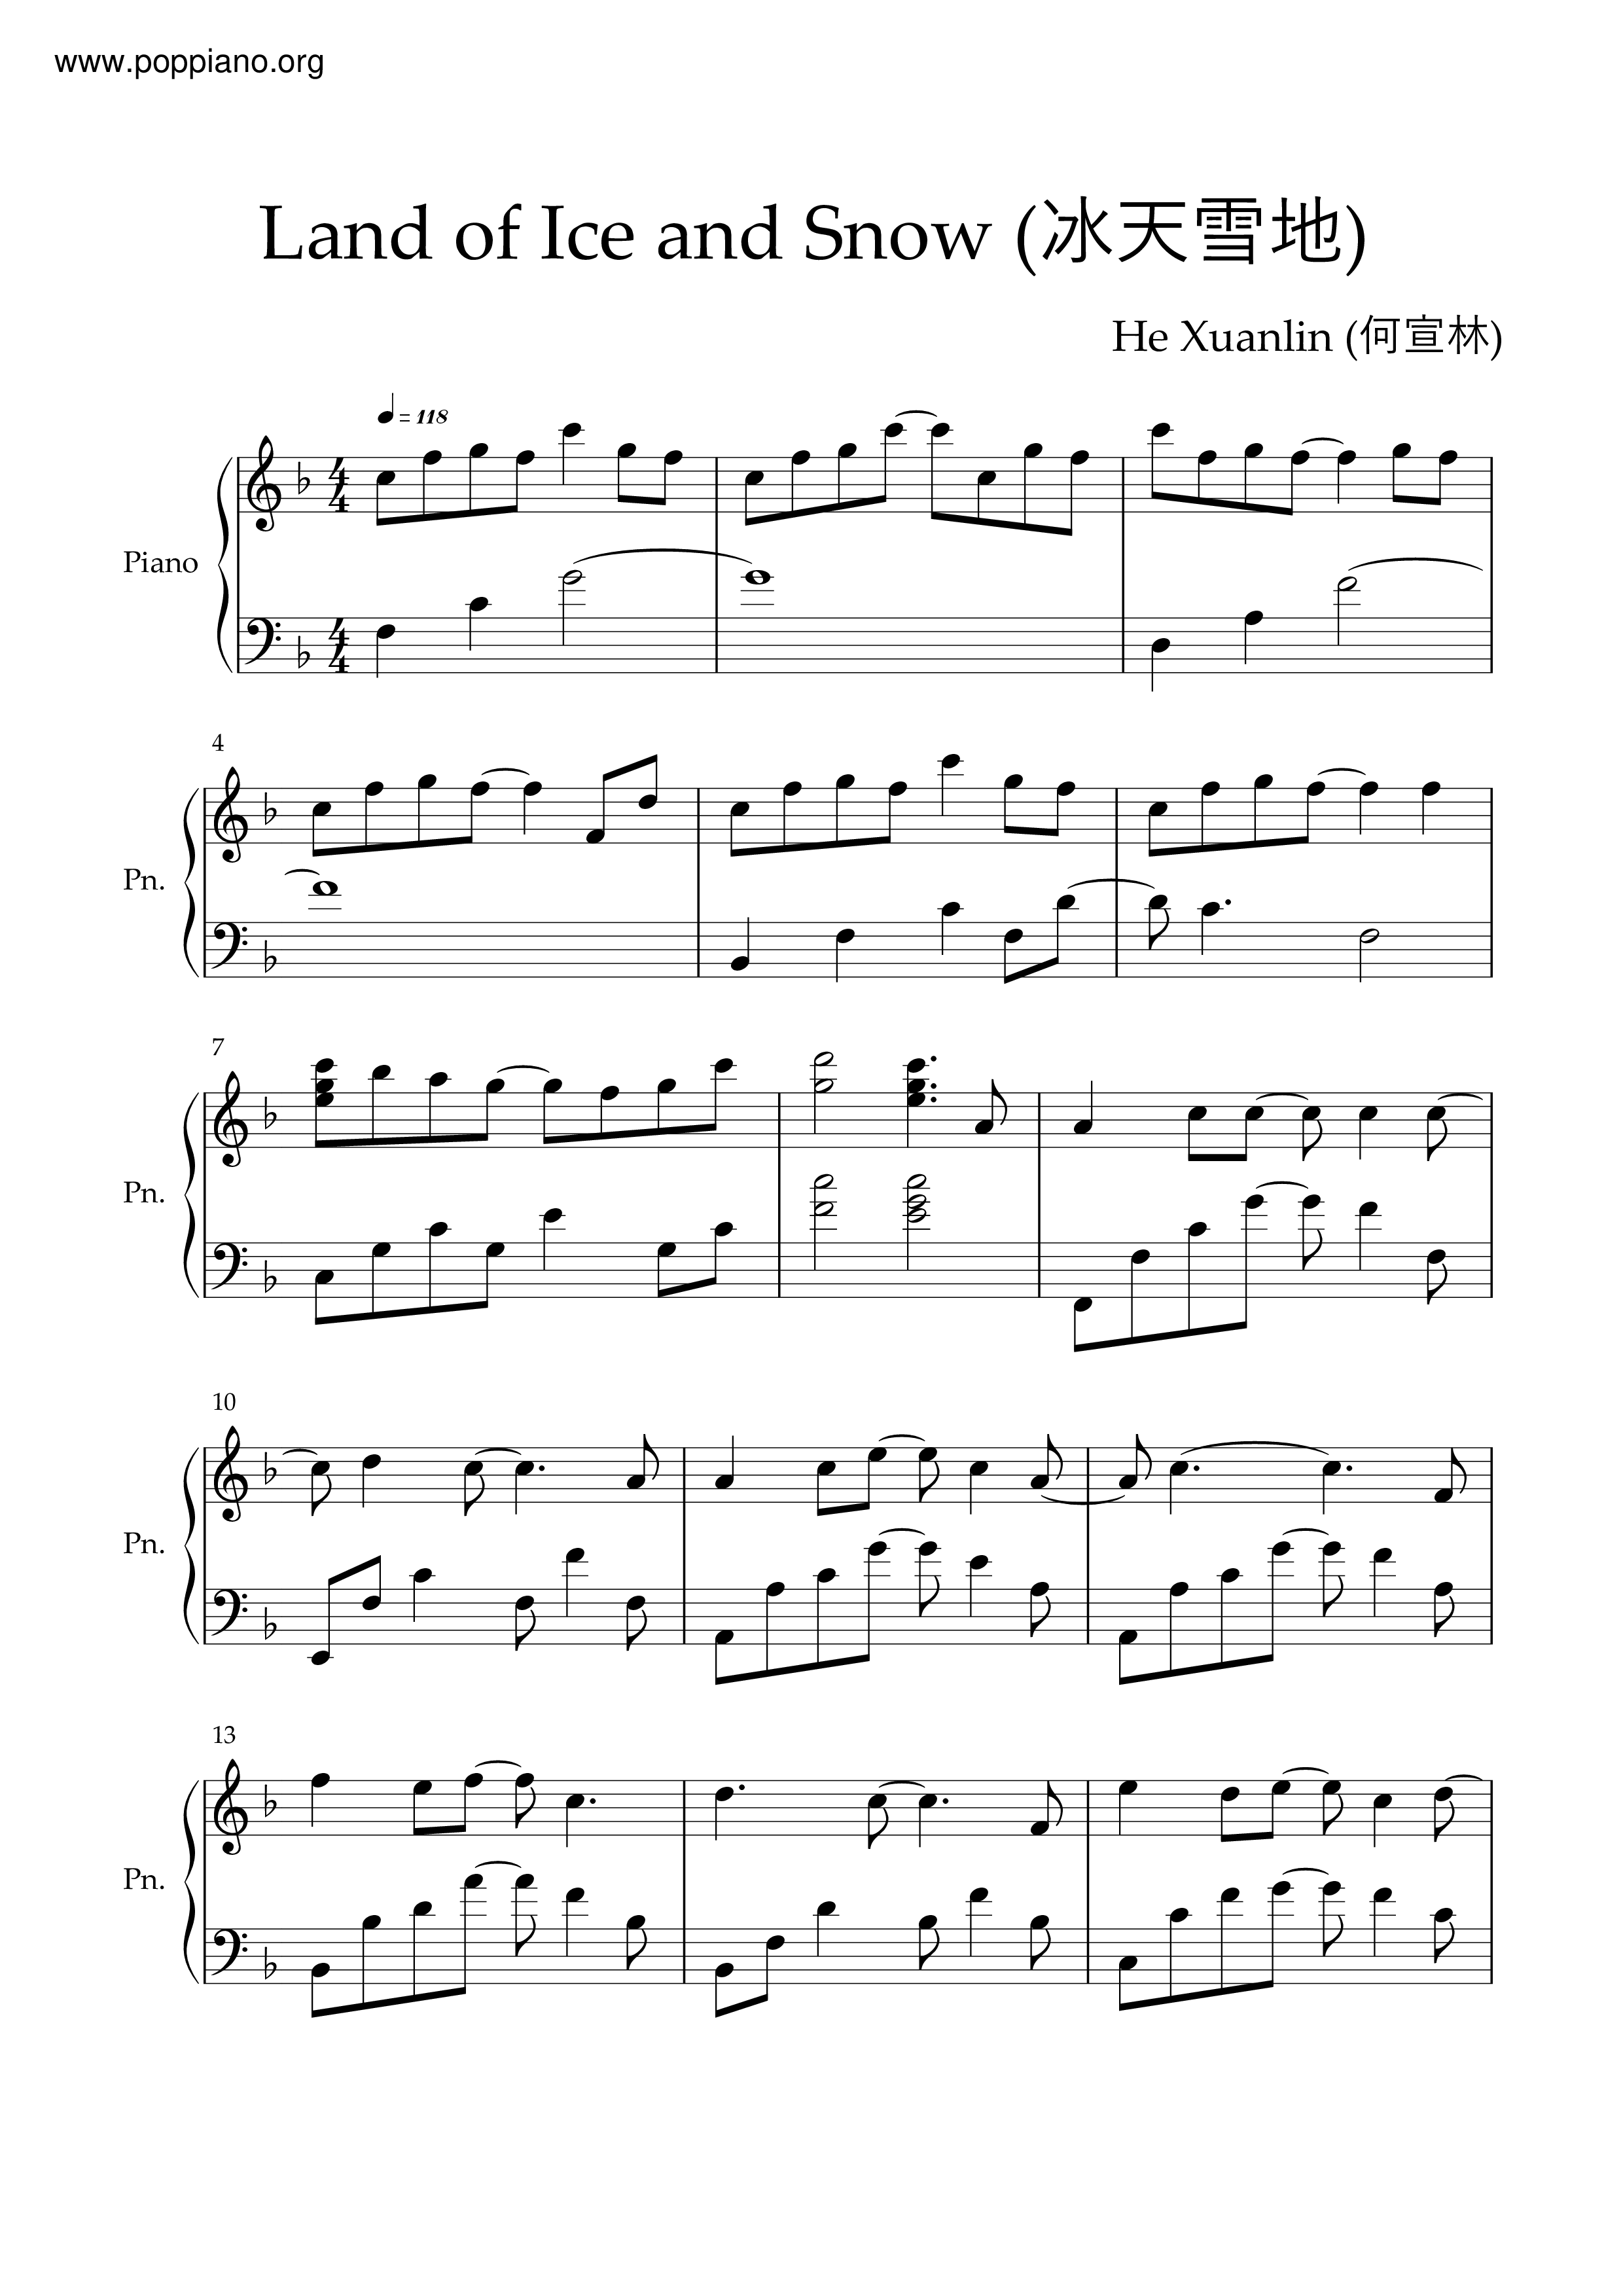 冰天雪地 (電視劇《冰糖燉雪梨》主題曲)ピアノ譜